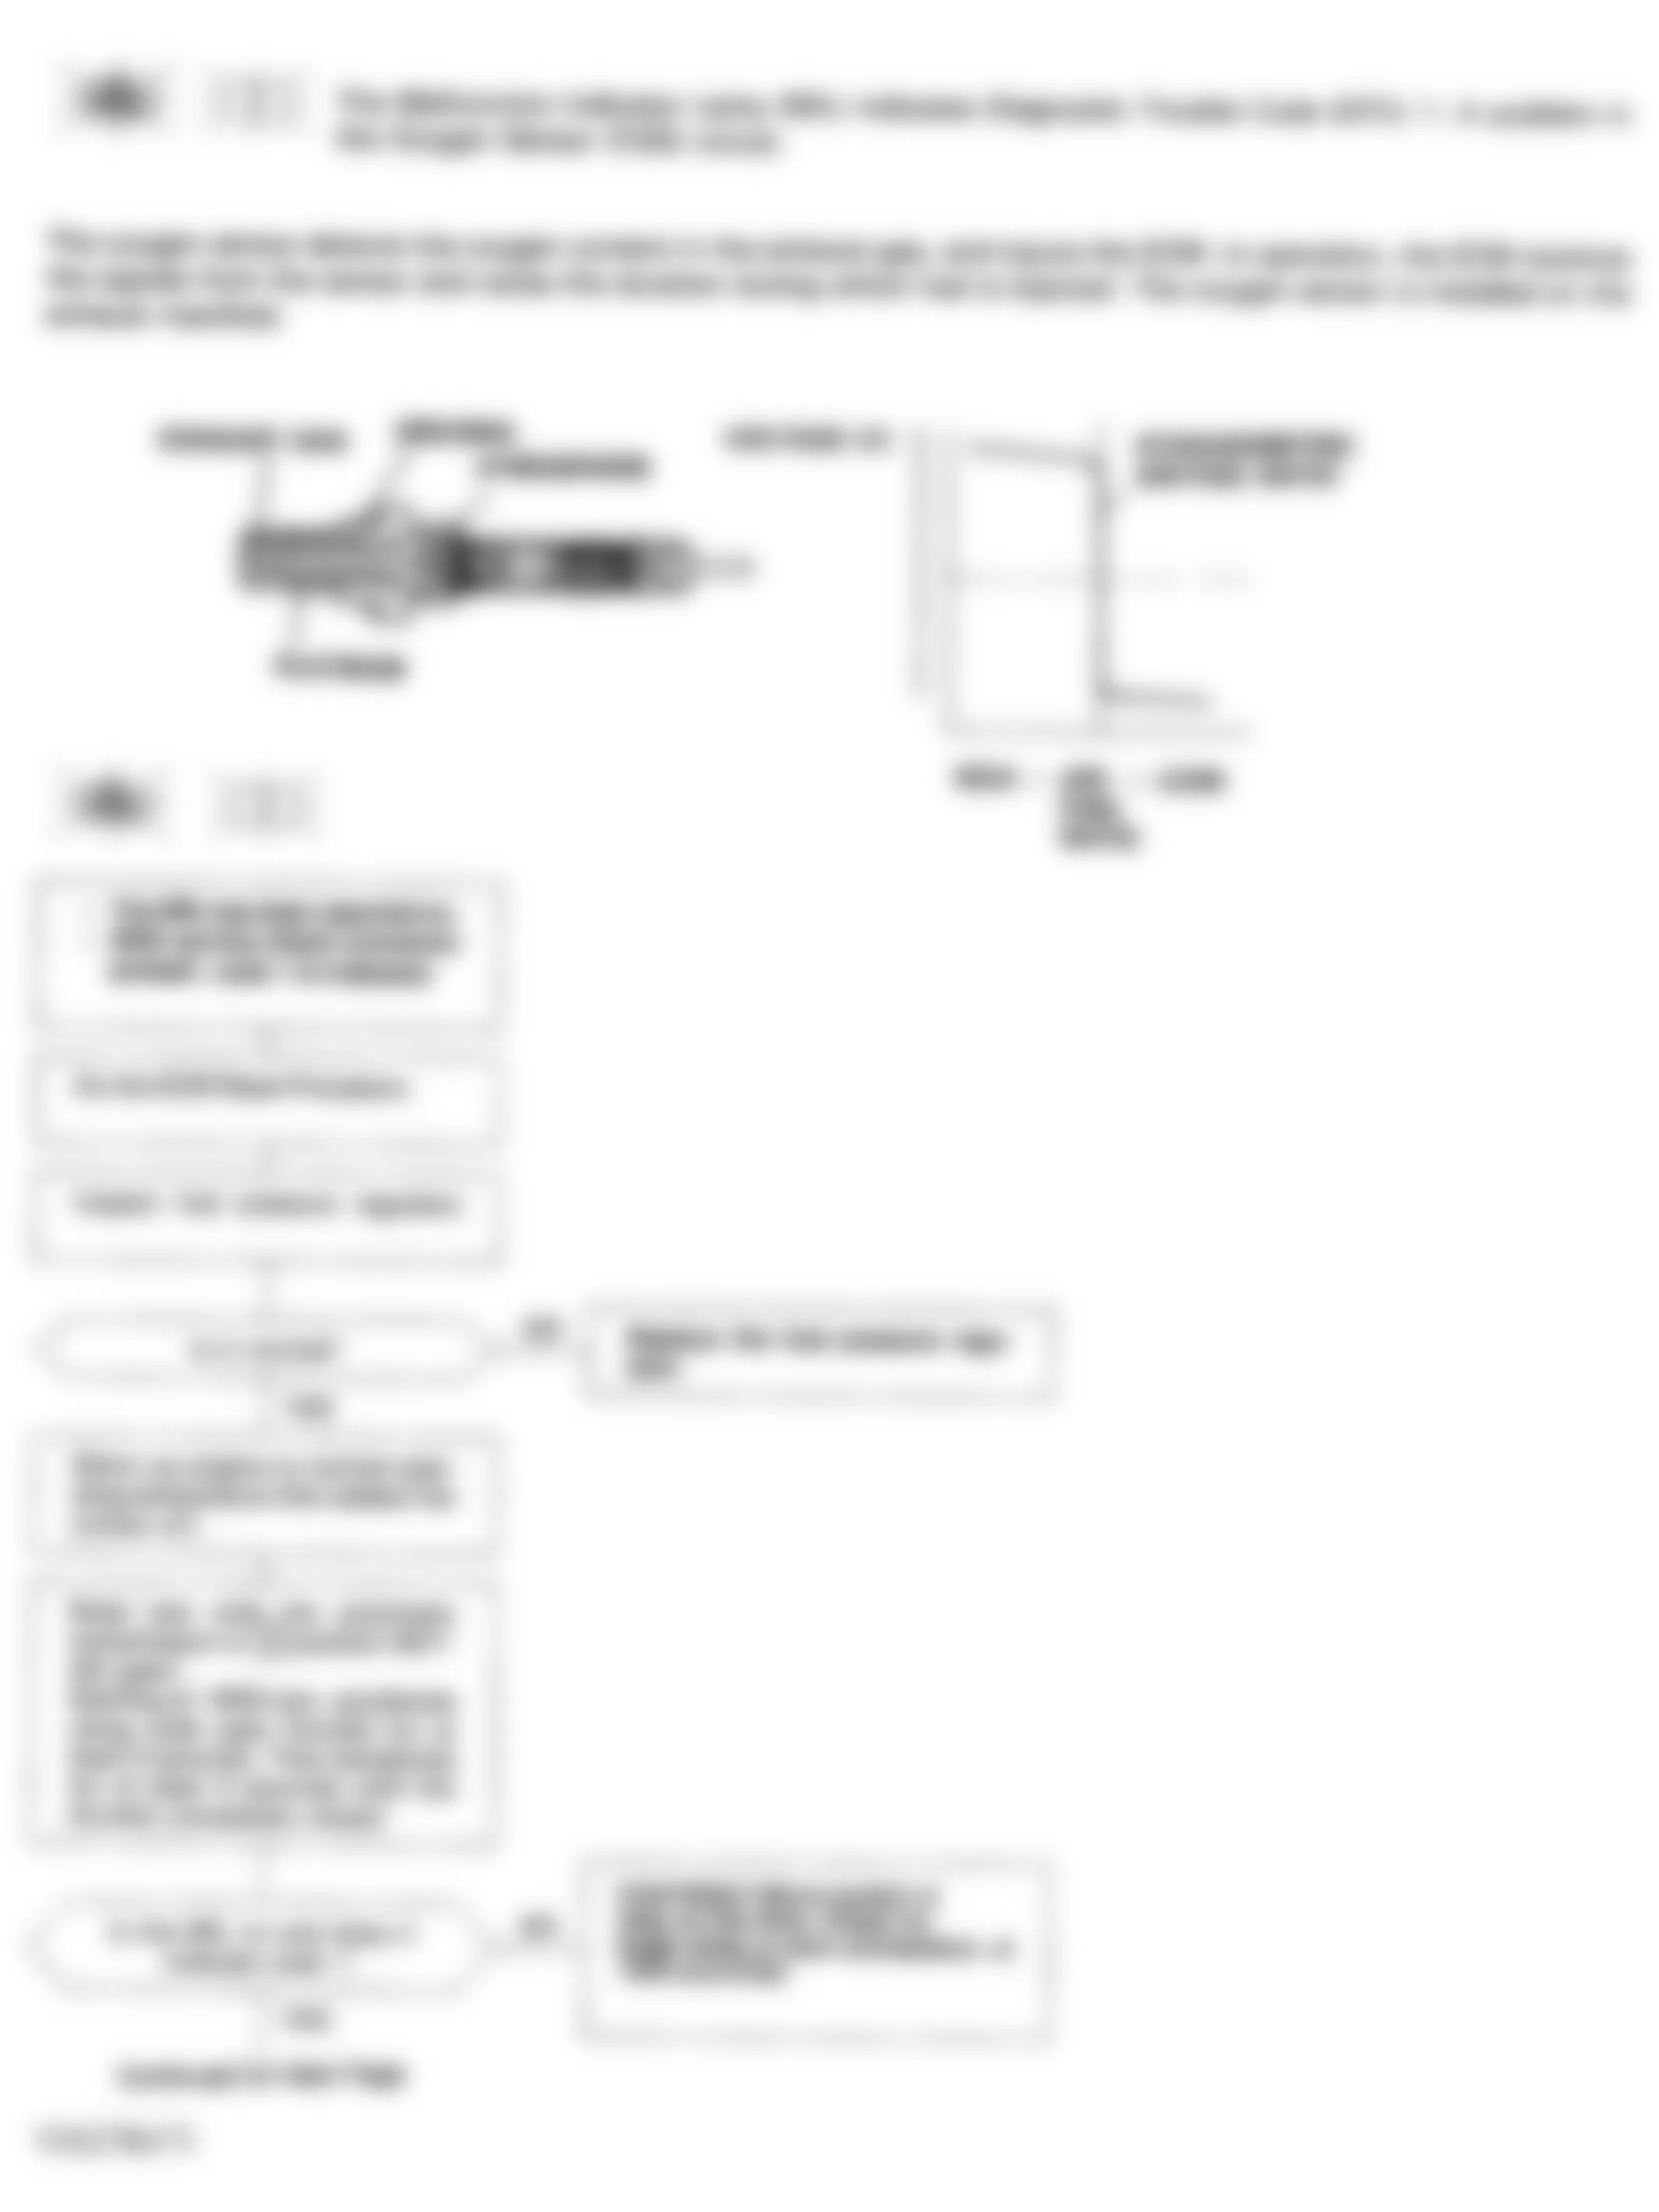 Honda Civic EX 1994 - Component Locations -  Code 1 Flow Chart (1 of 2) Oxygen Sensor (O2S) Circuit D15B8 Federal Model